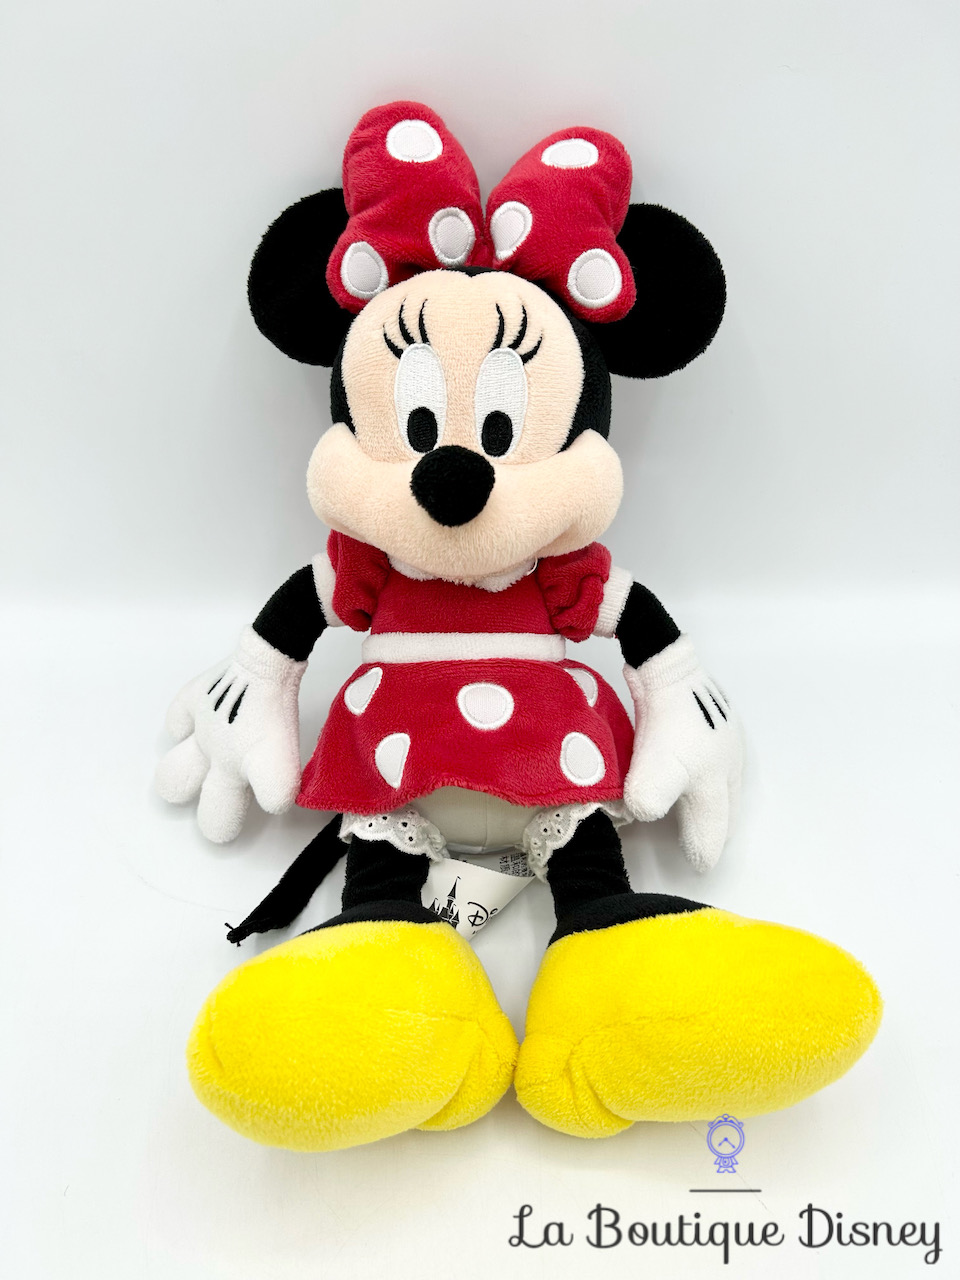 Peluche Minnie Mouse Classique Disney Parks 2016 Disneyland robe rouge pois 32 cm